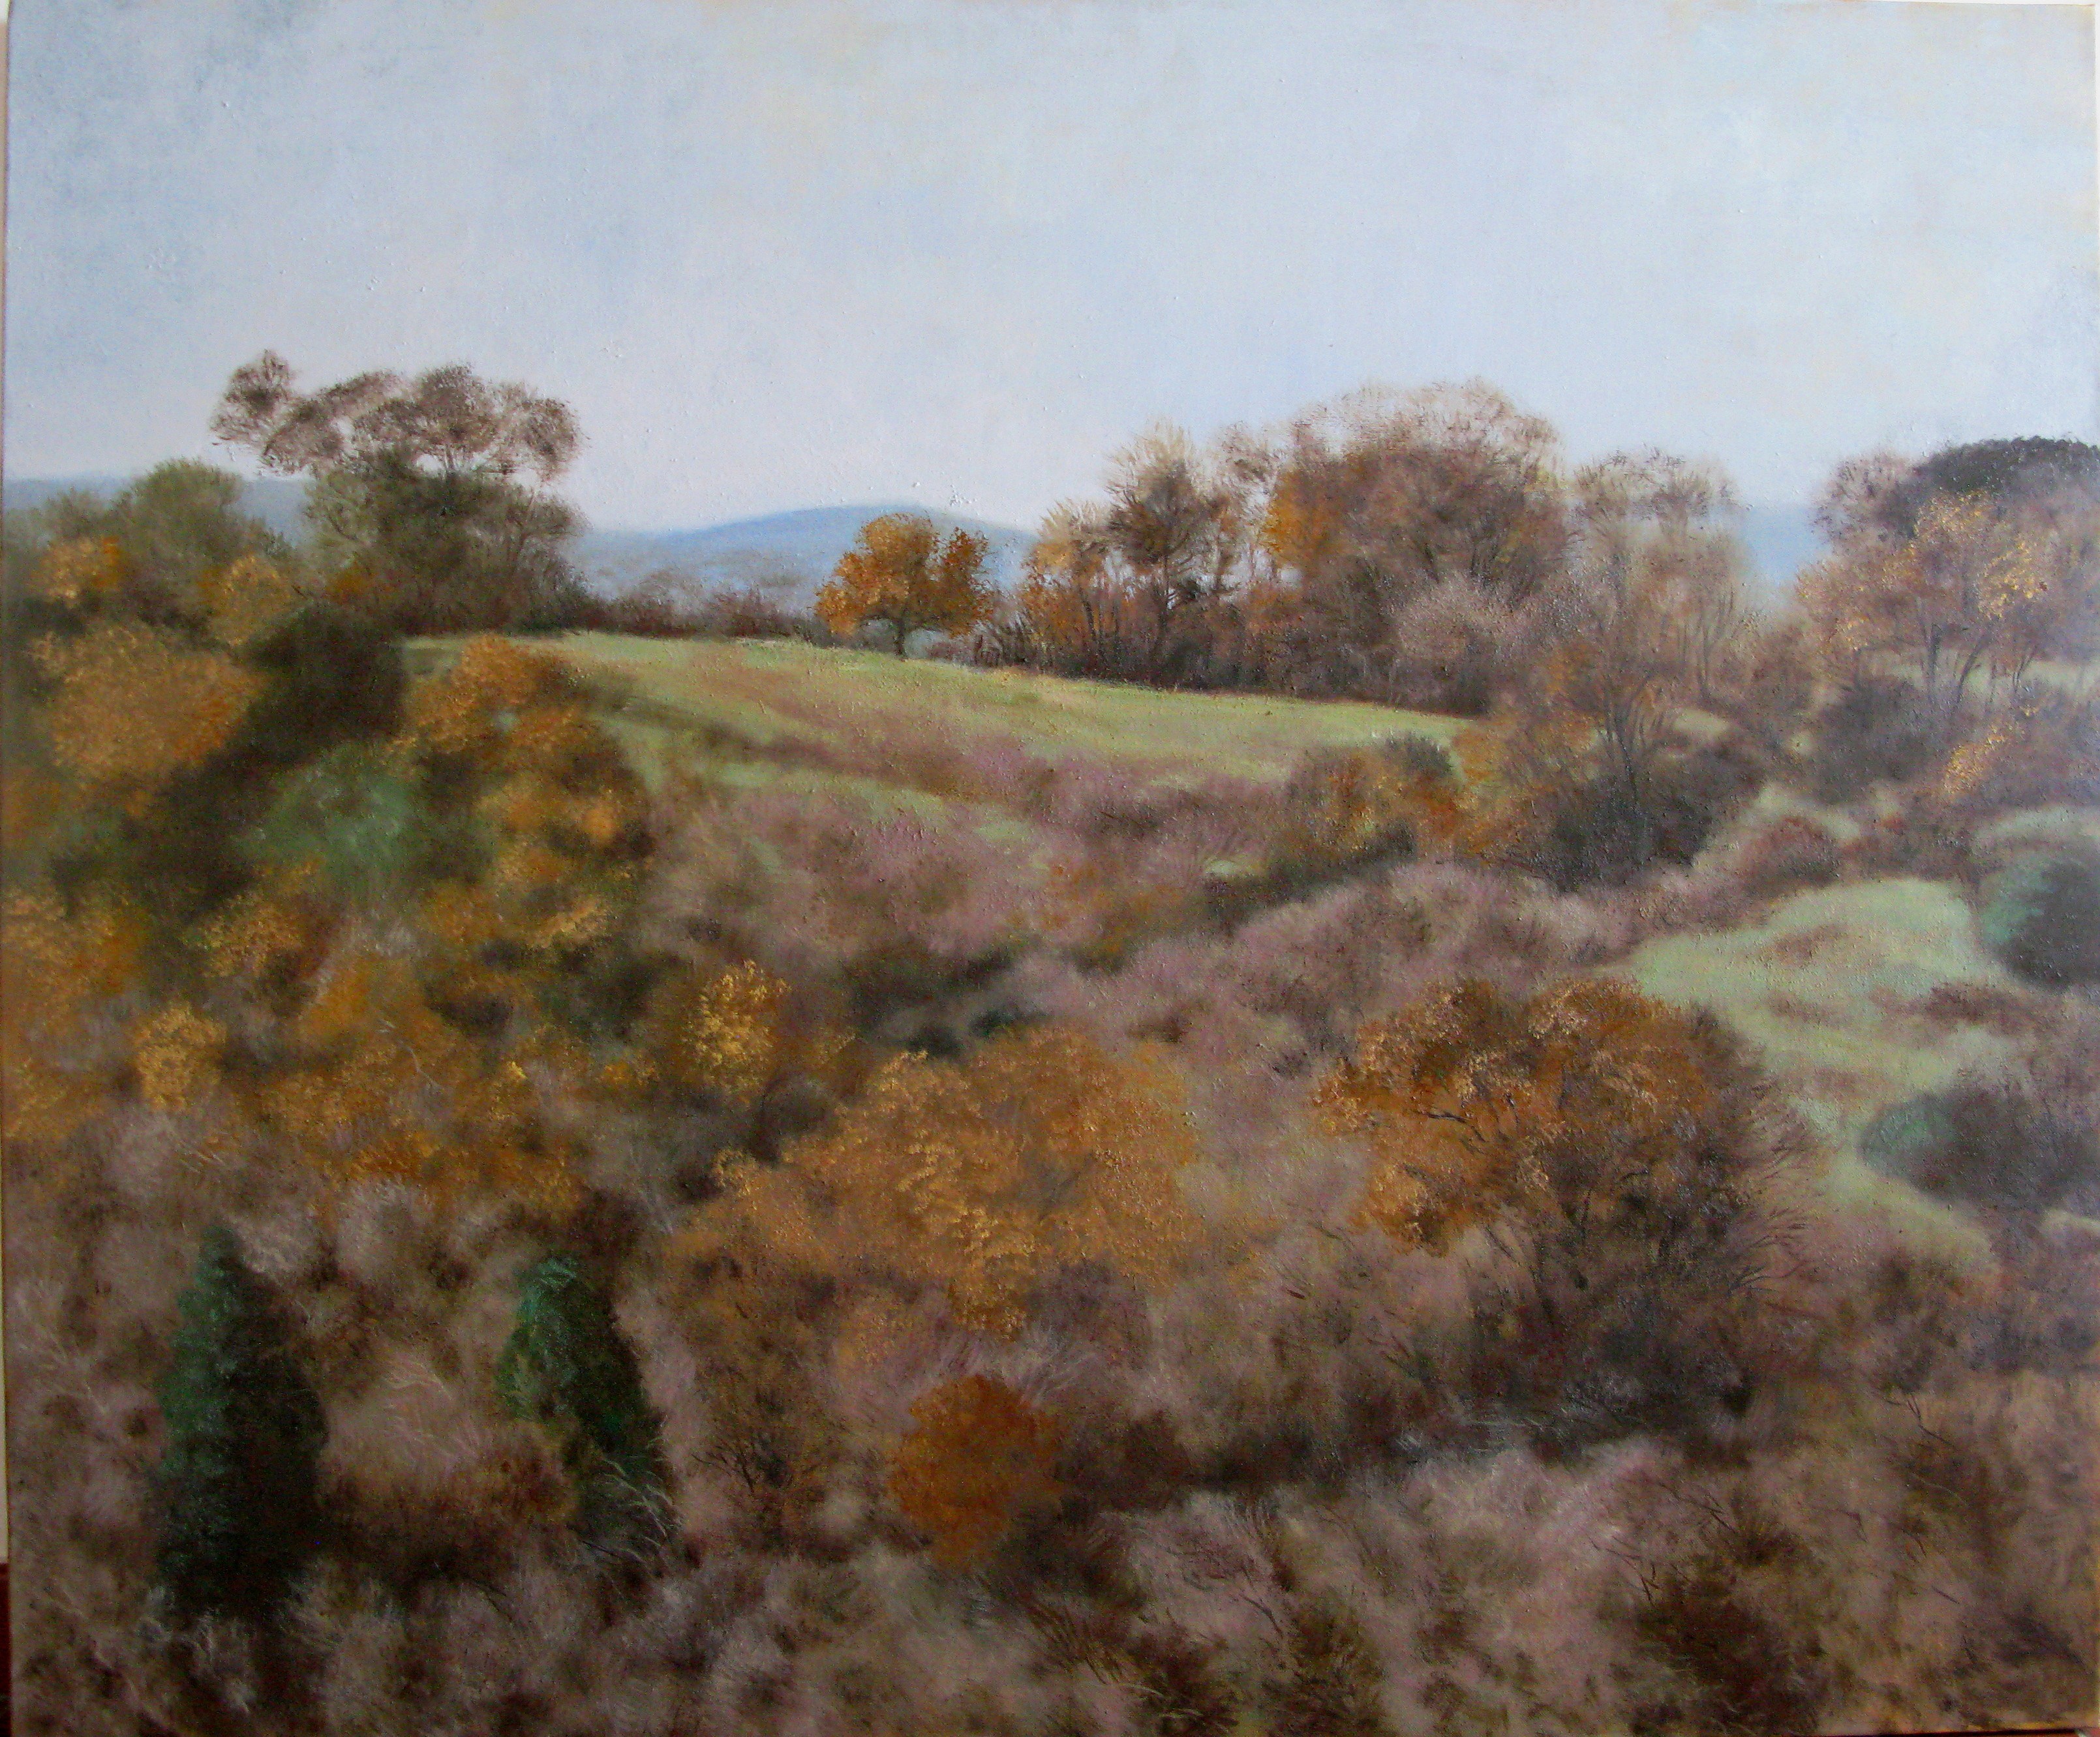 B 17) Paesaggio invernale nella Tuscia, pomeriggio, olio su tela, 100x120, 2012